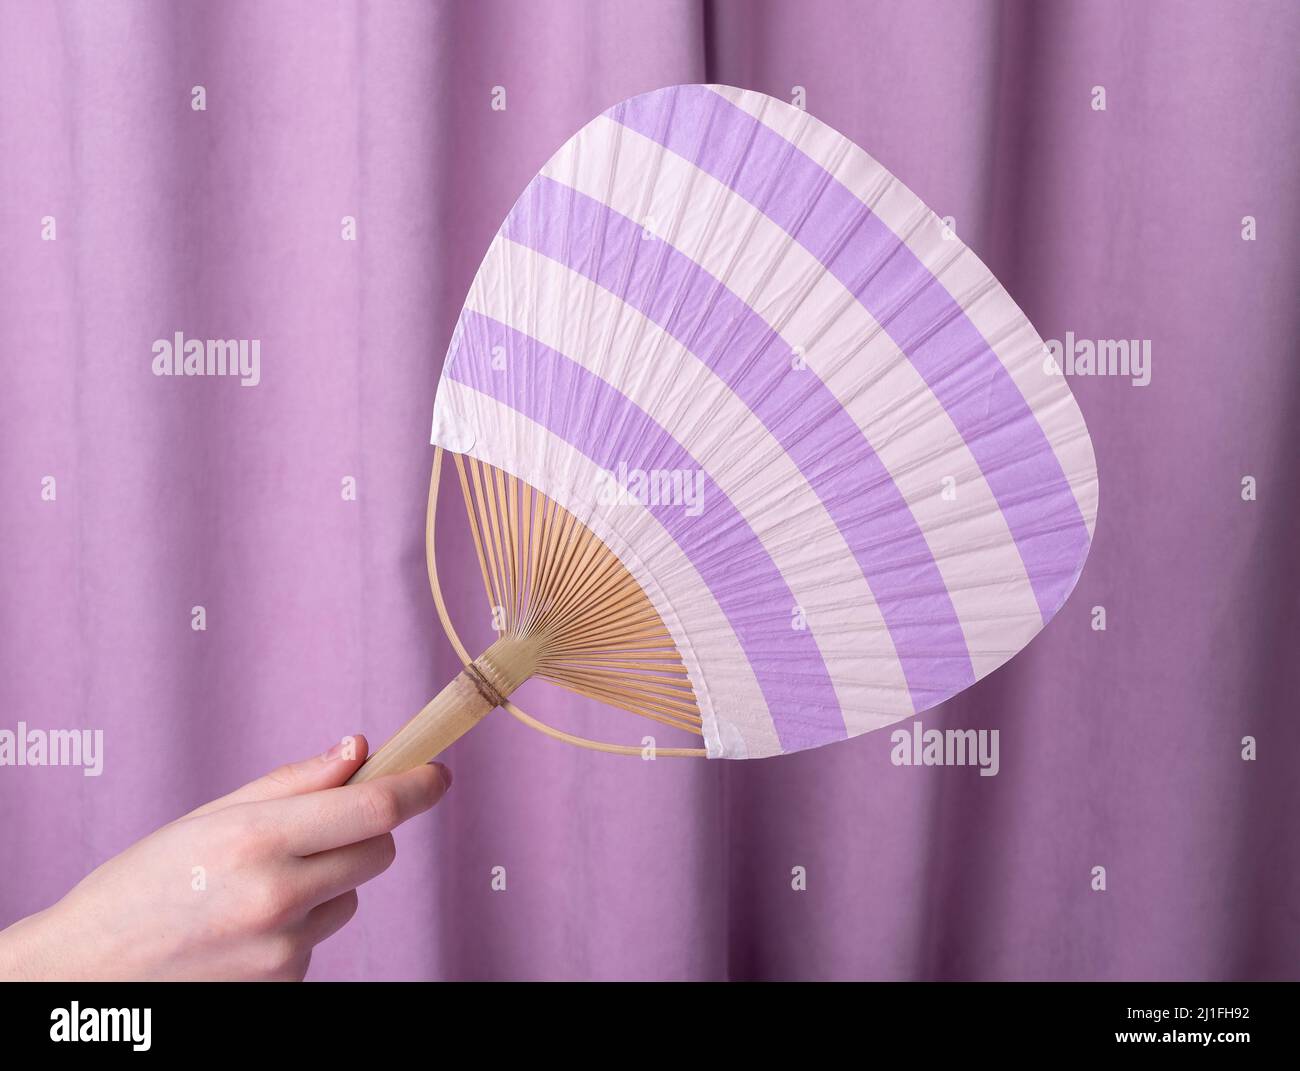 Frau Hand hält Utiva Fan auf violettem Hintergrund. Japanisches Accessoire für die Rettung von Wärme Konzept. Hochwertige Fotos Stockfoto